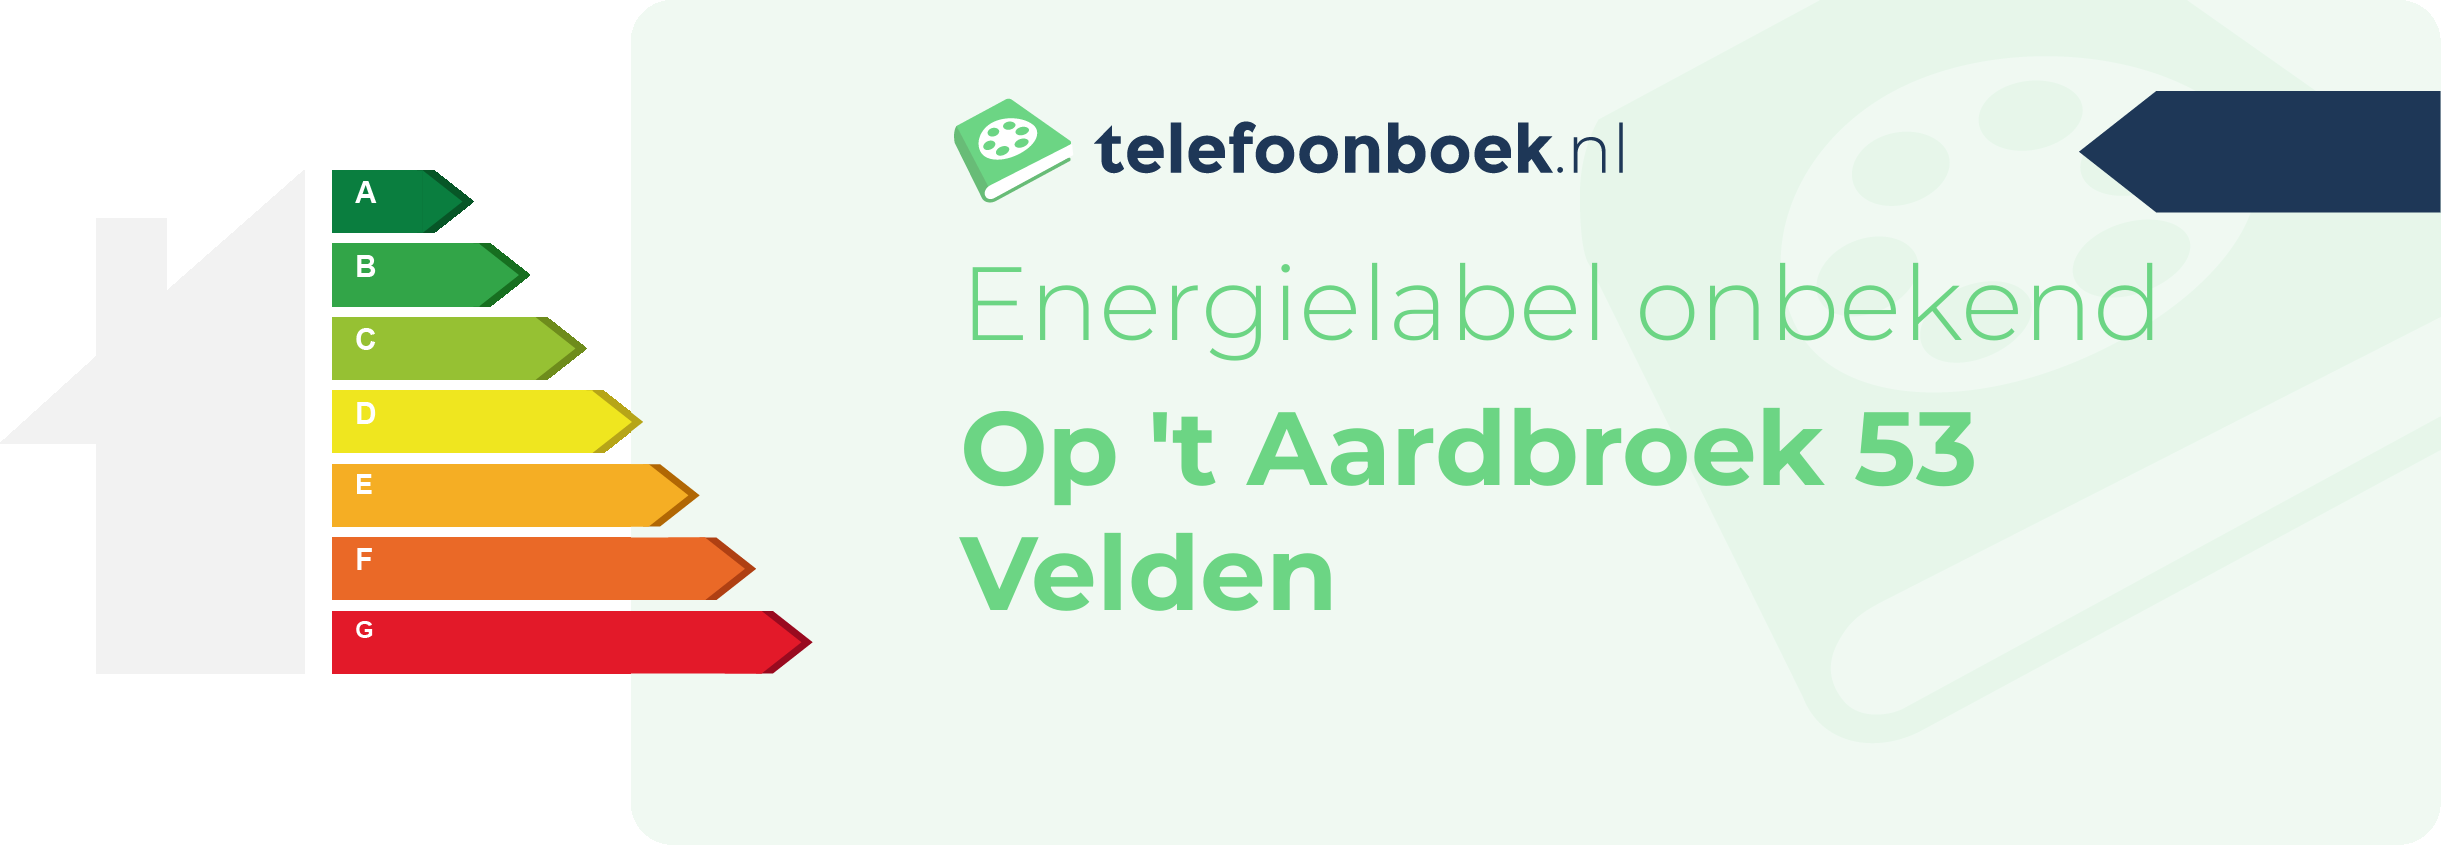 Energielabel Op 't Aardbroek 53 Velden